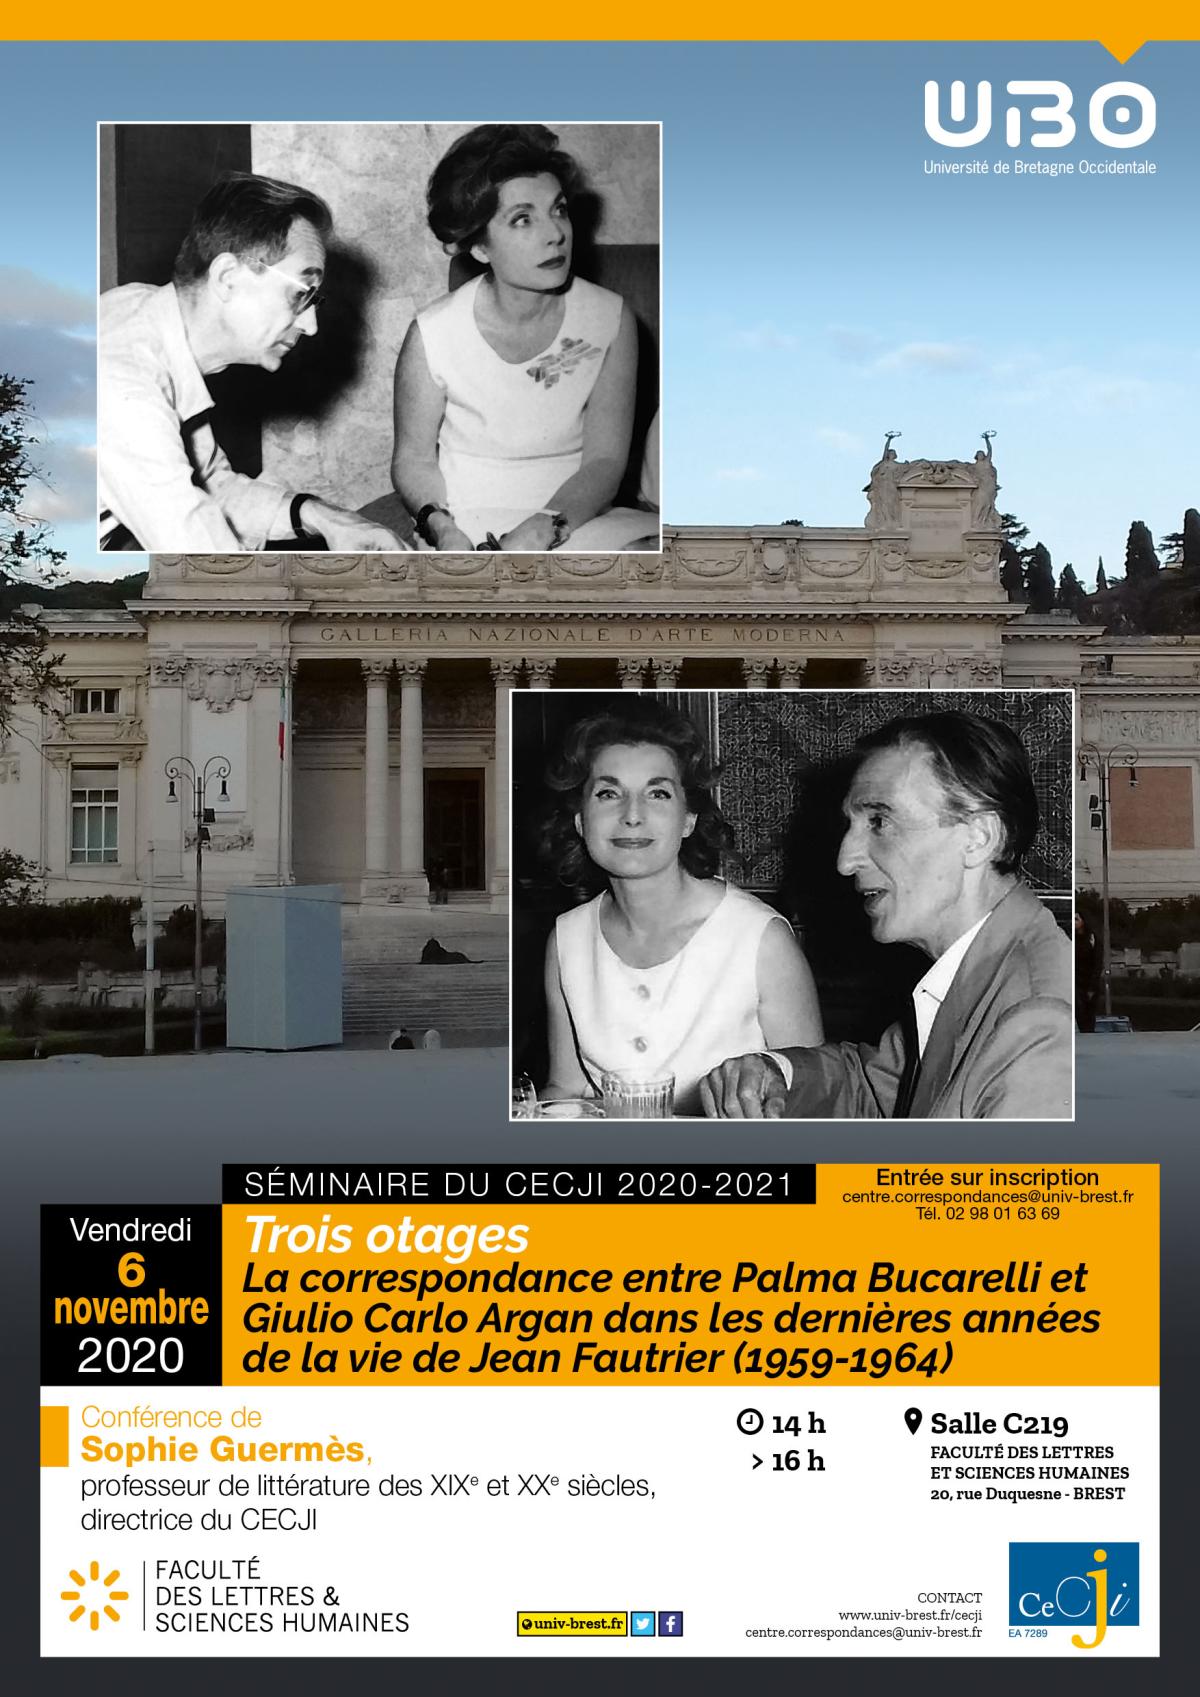 Trois otages La correspondance entre Palma Bucarelli et Giulio Carlo Argan dans les dernières années de la vie de Jean Fautrier (1959-1964)